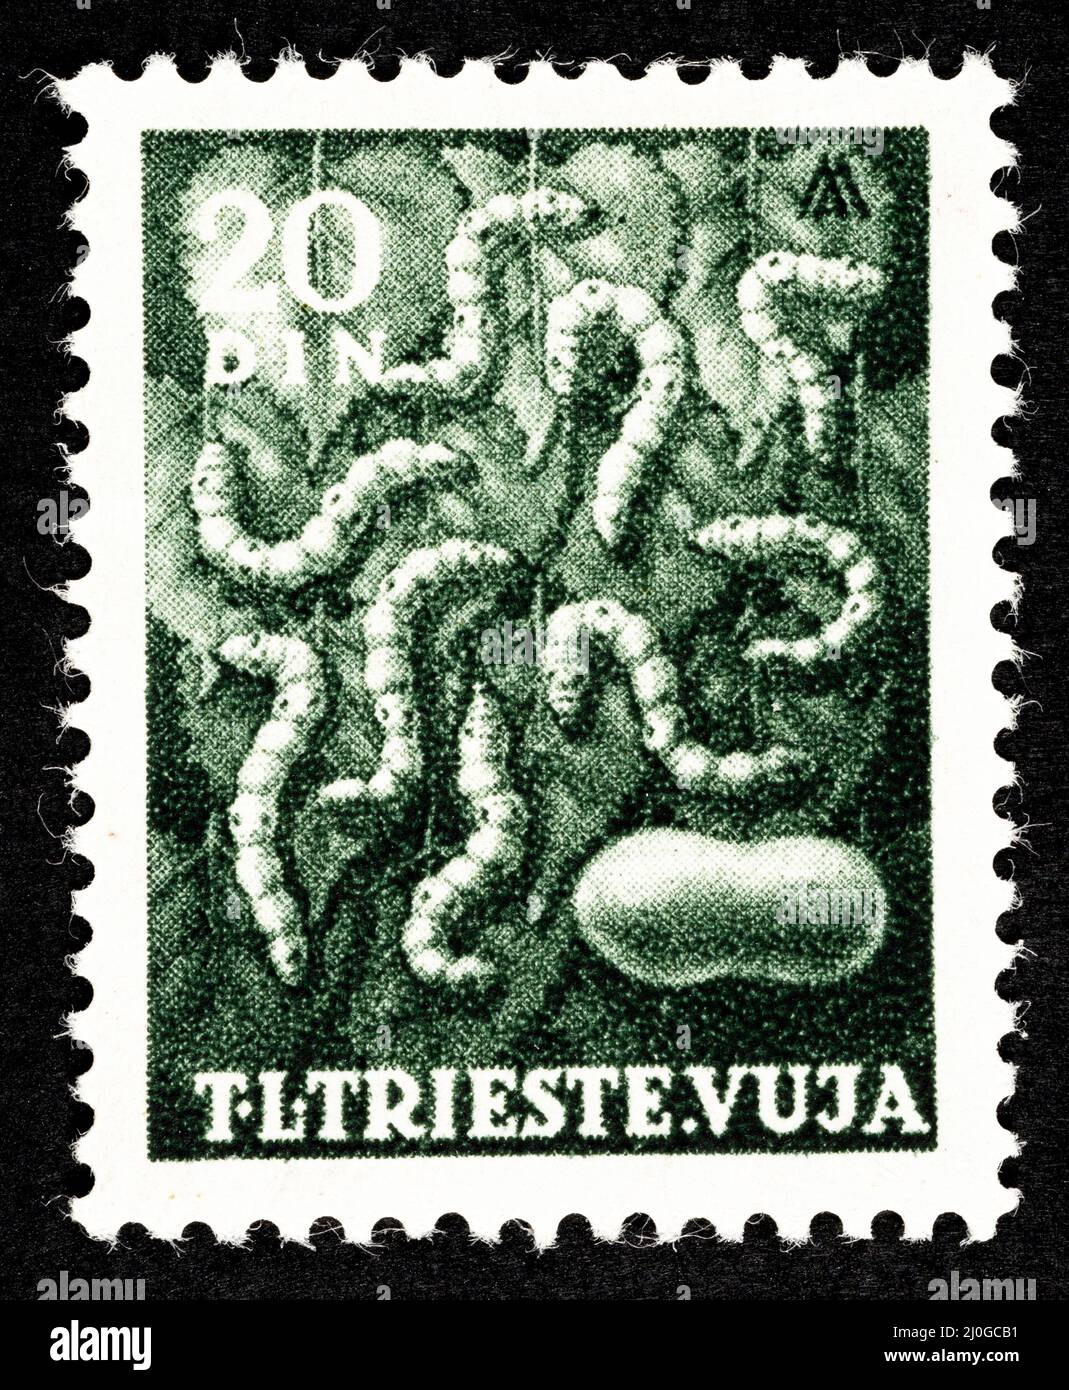 Timbre-poste commémoratif de l'ex-Yougoslavie, surimprimé STT VUJNA, avec l'illustration des vers à soie du territoire libre de Trieste, zo Banque D'Images